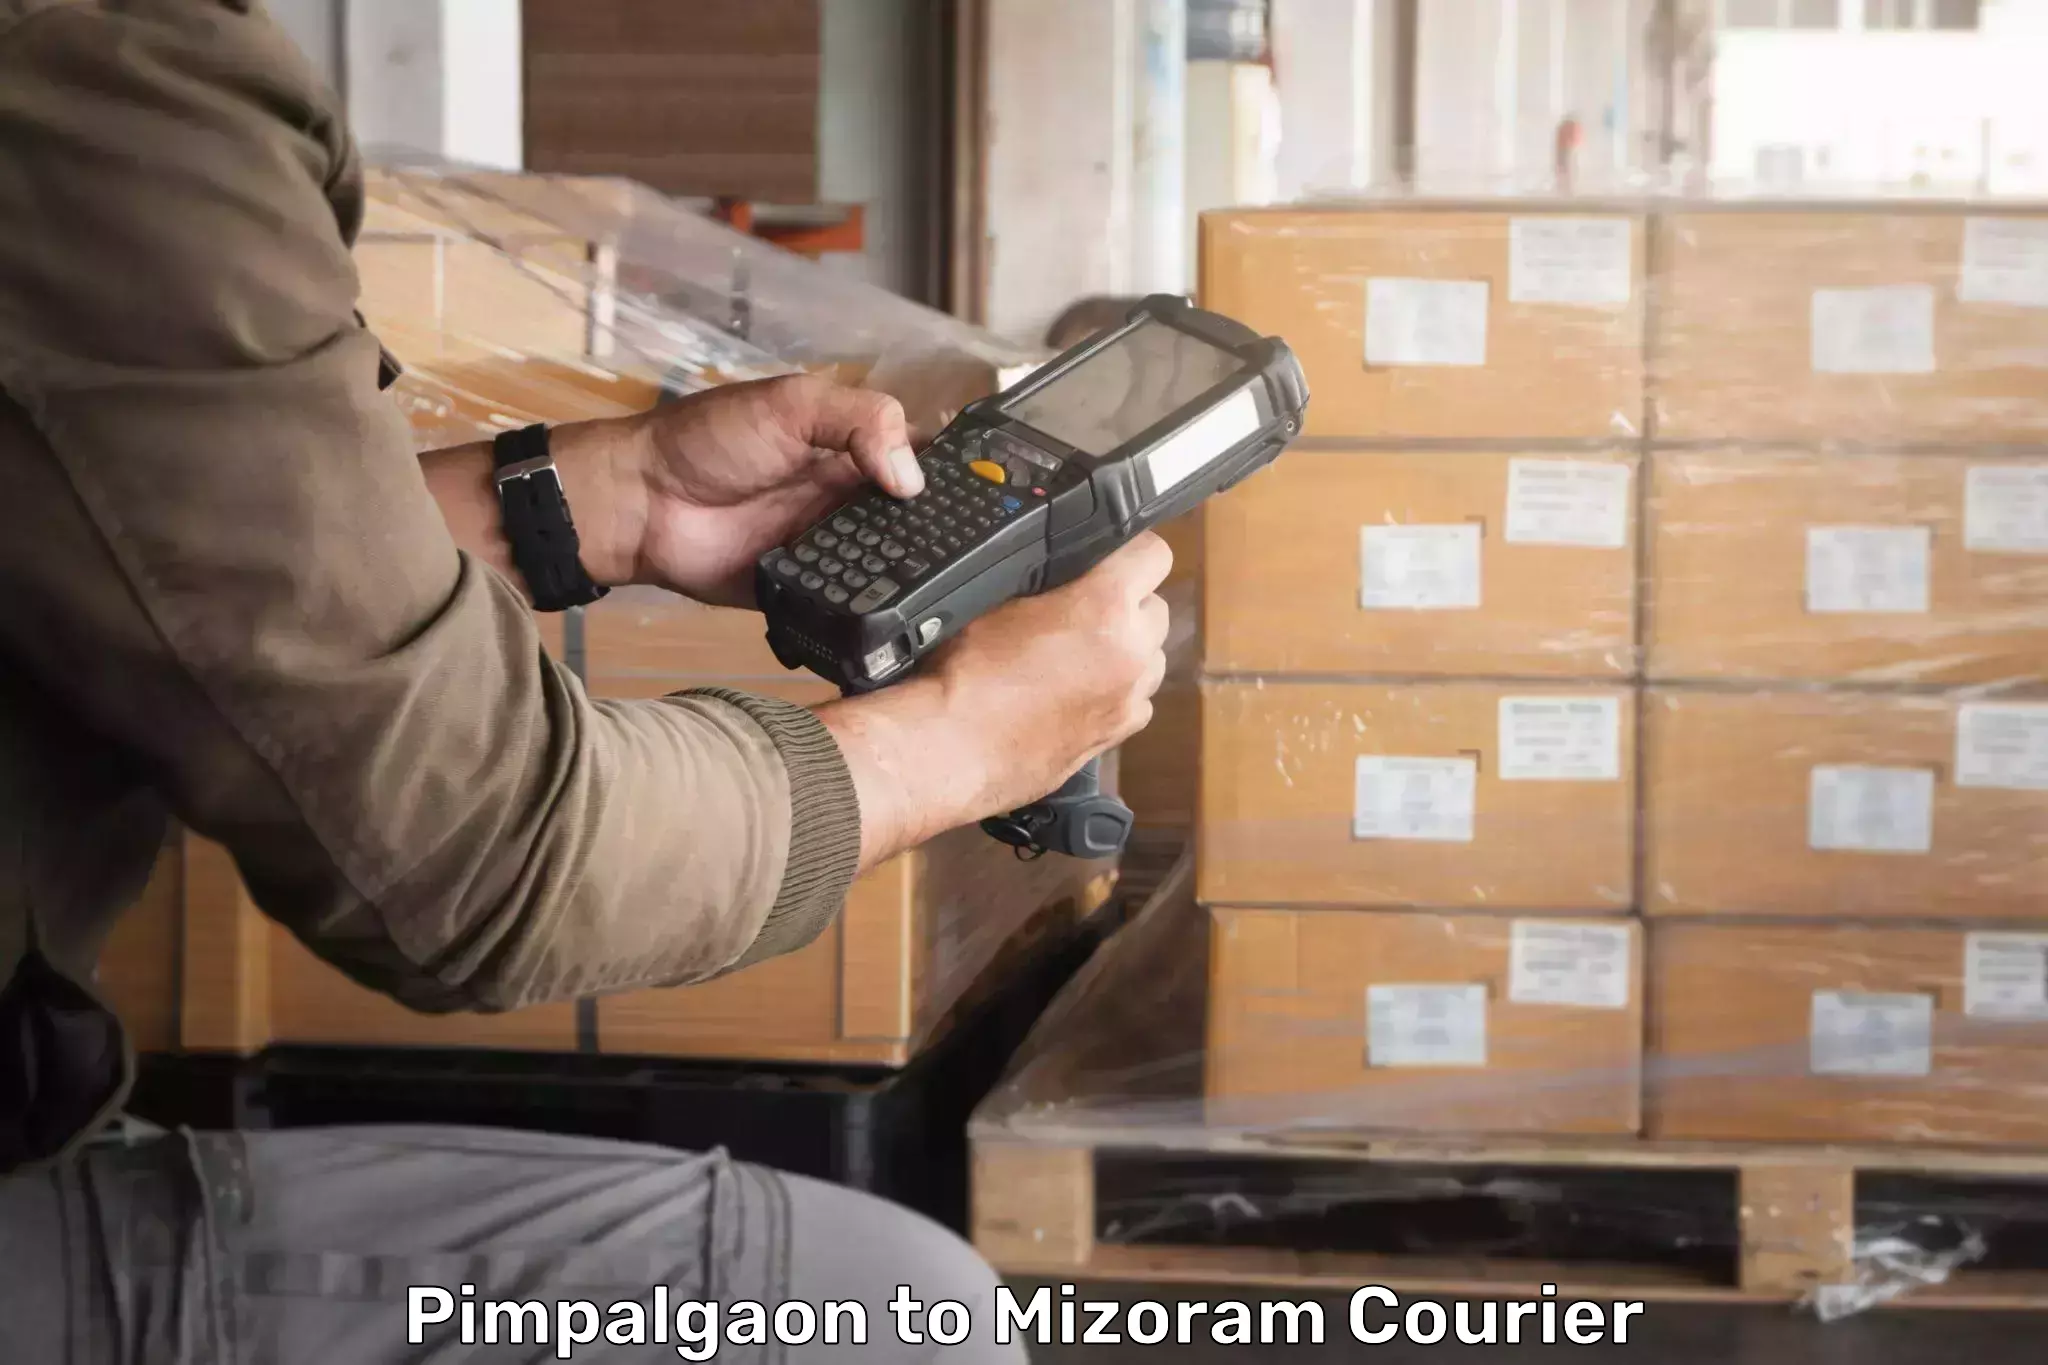 Courier service comparison Pimpalgaon to Lawngtlai